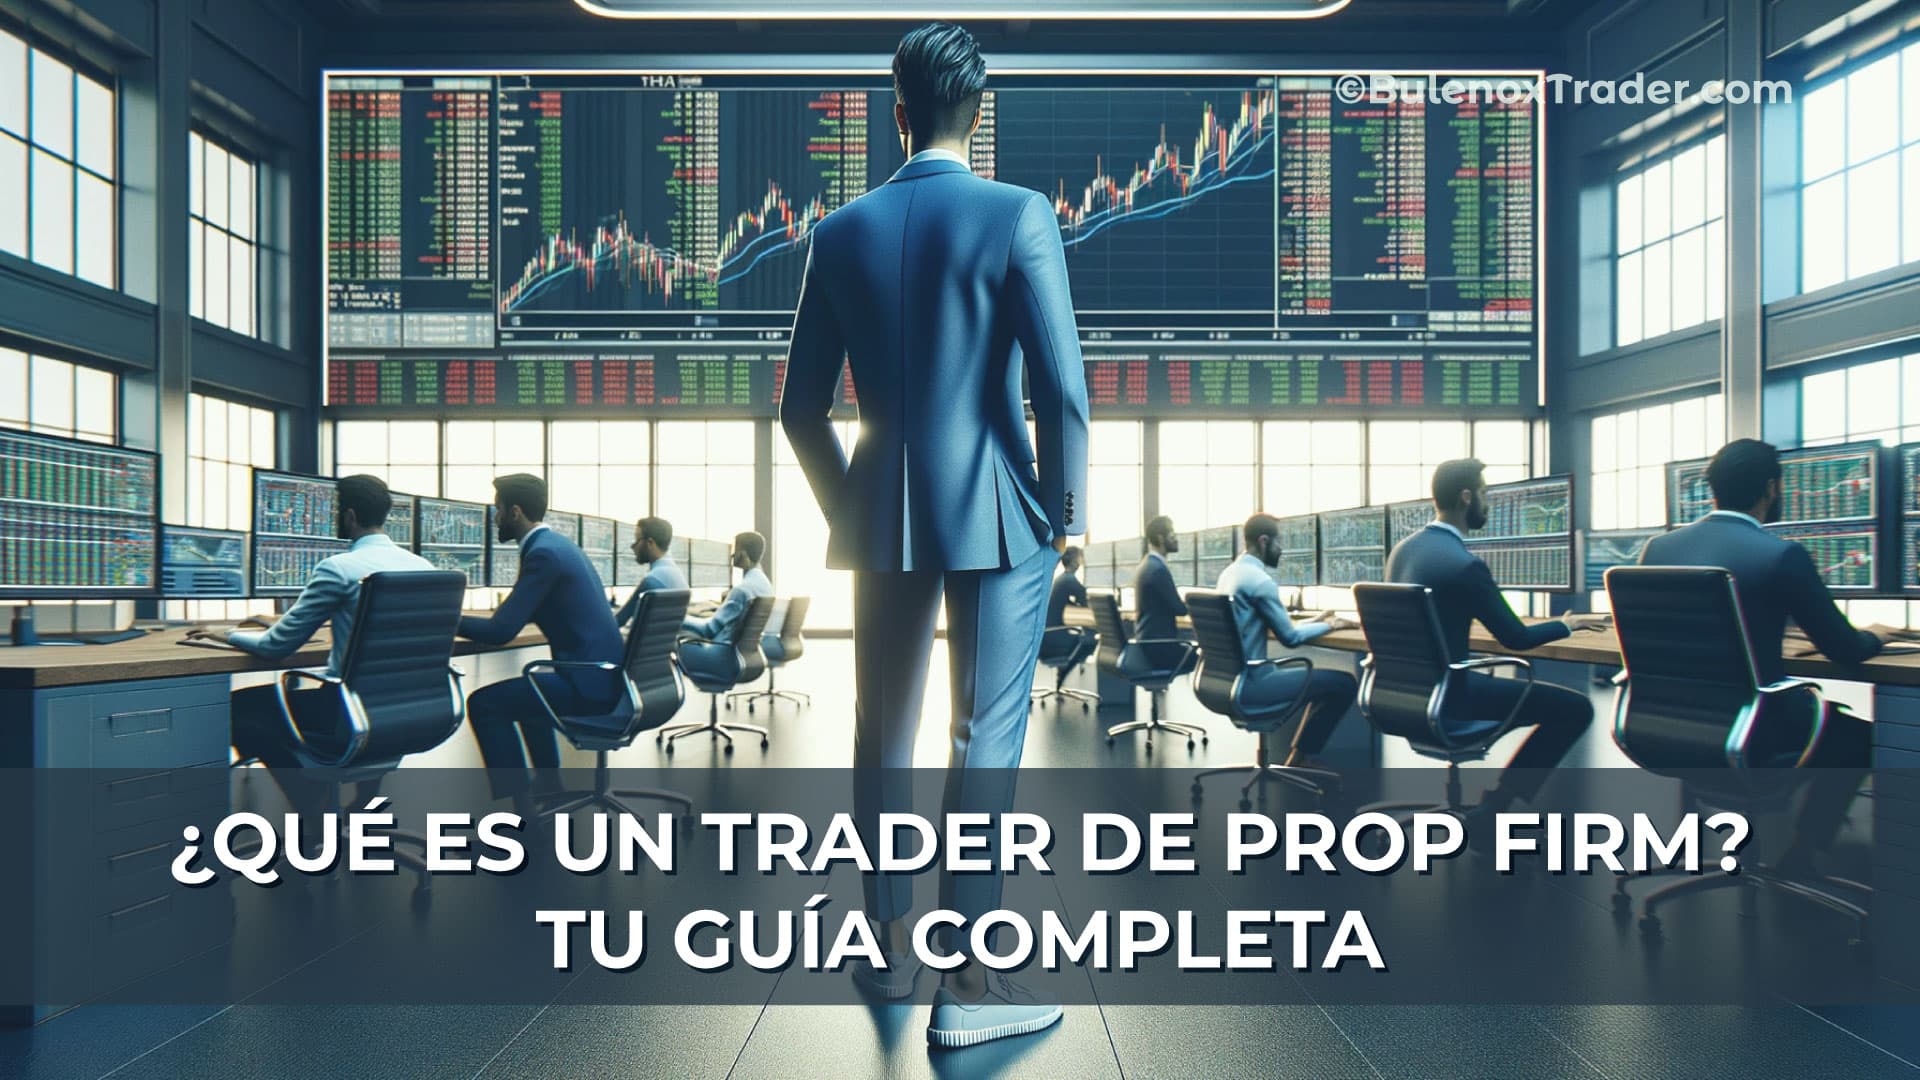 Qué-es-un-Trader-de-Prop-Firm-Tu-Guía-Completa-on-Bulenox-Trader-Website